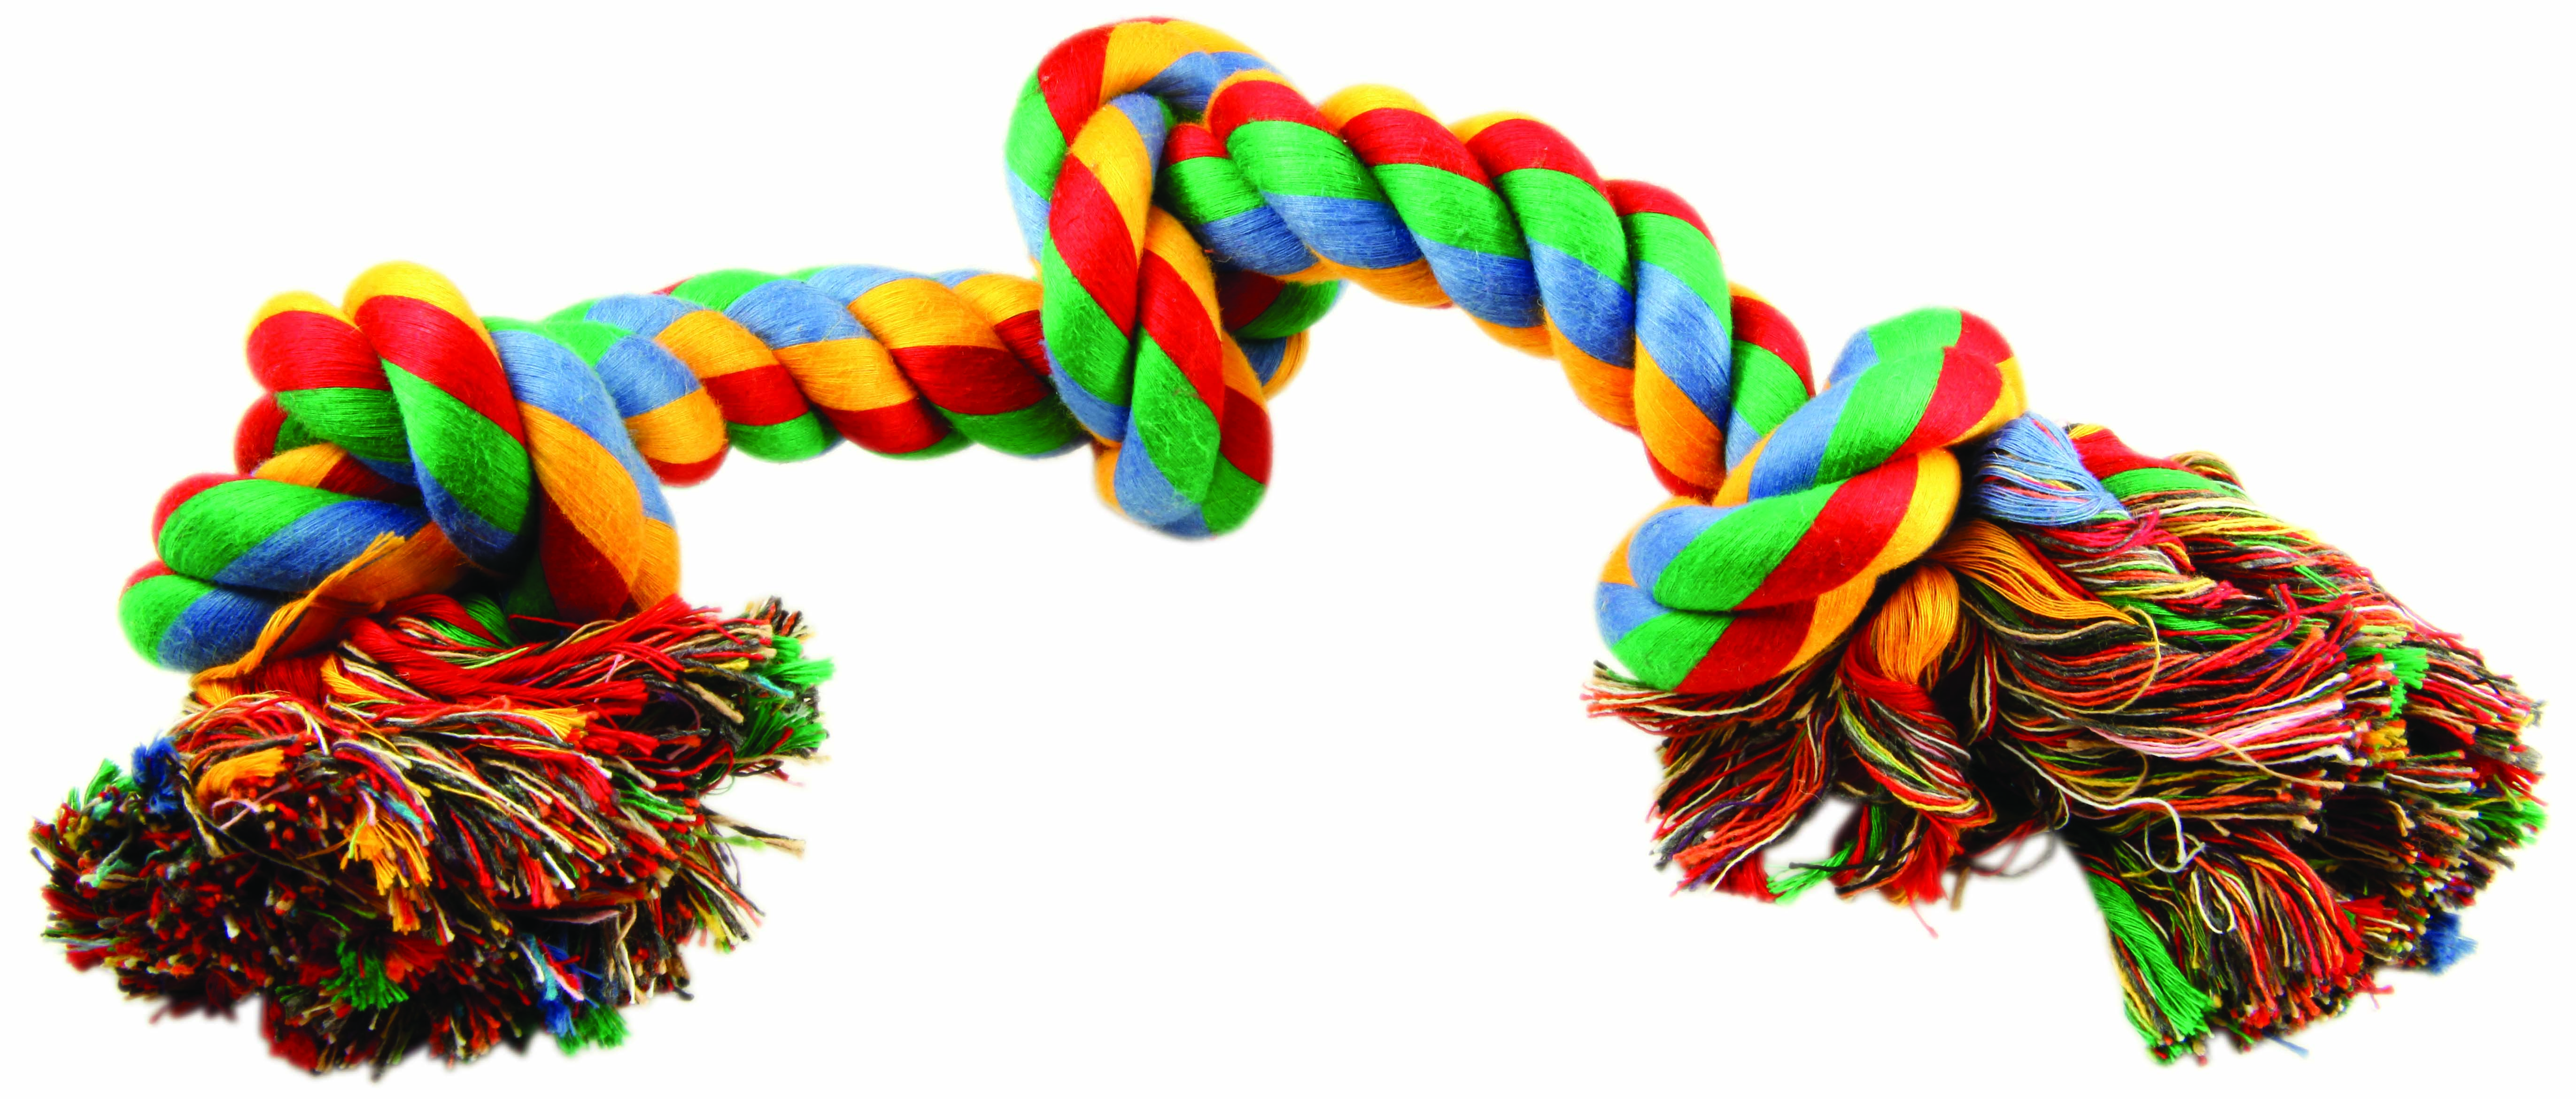 Игрушка веревочная разноцветная с 3 узлами 40см, Dog Fantasy